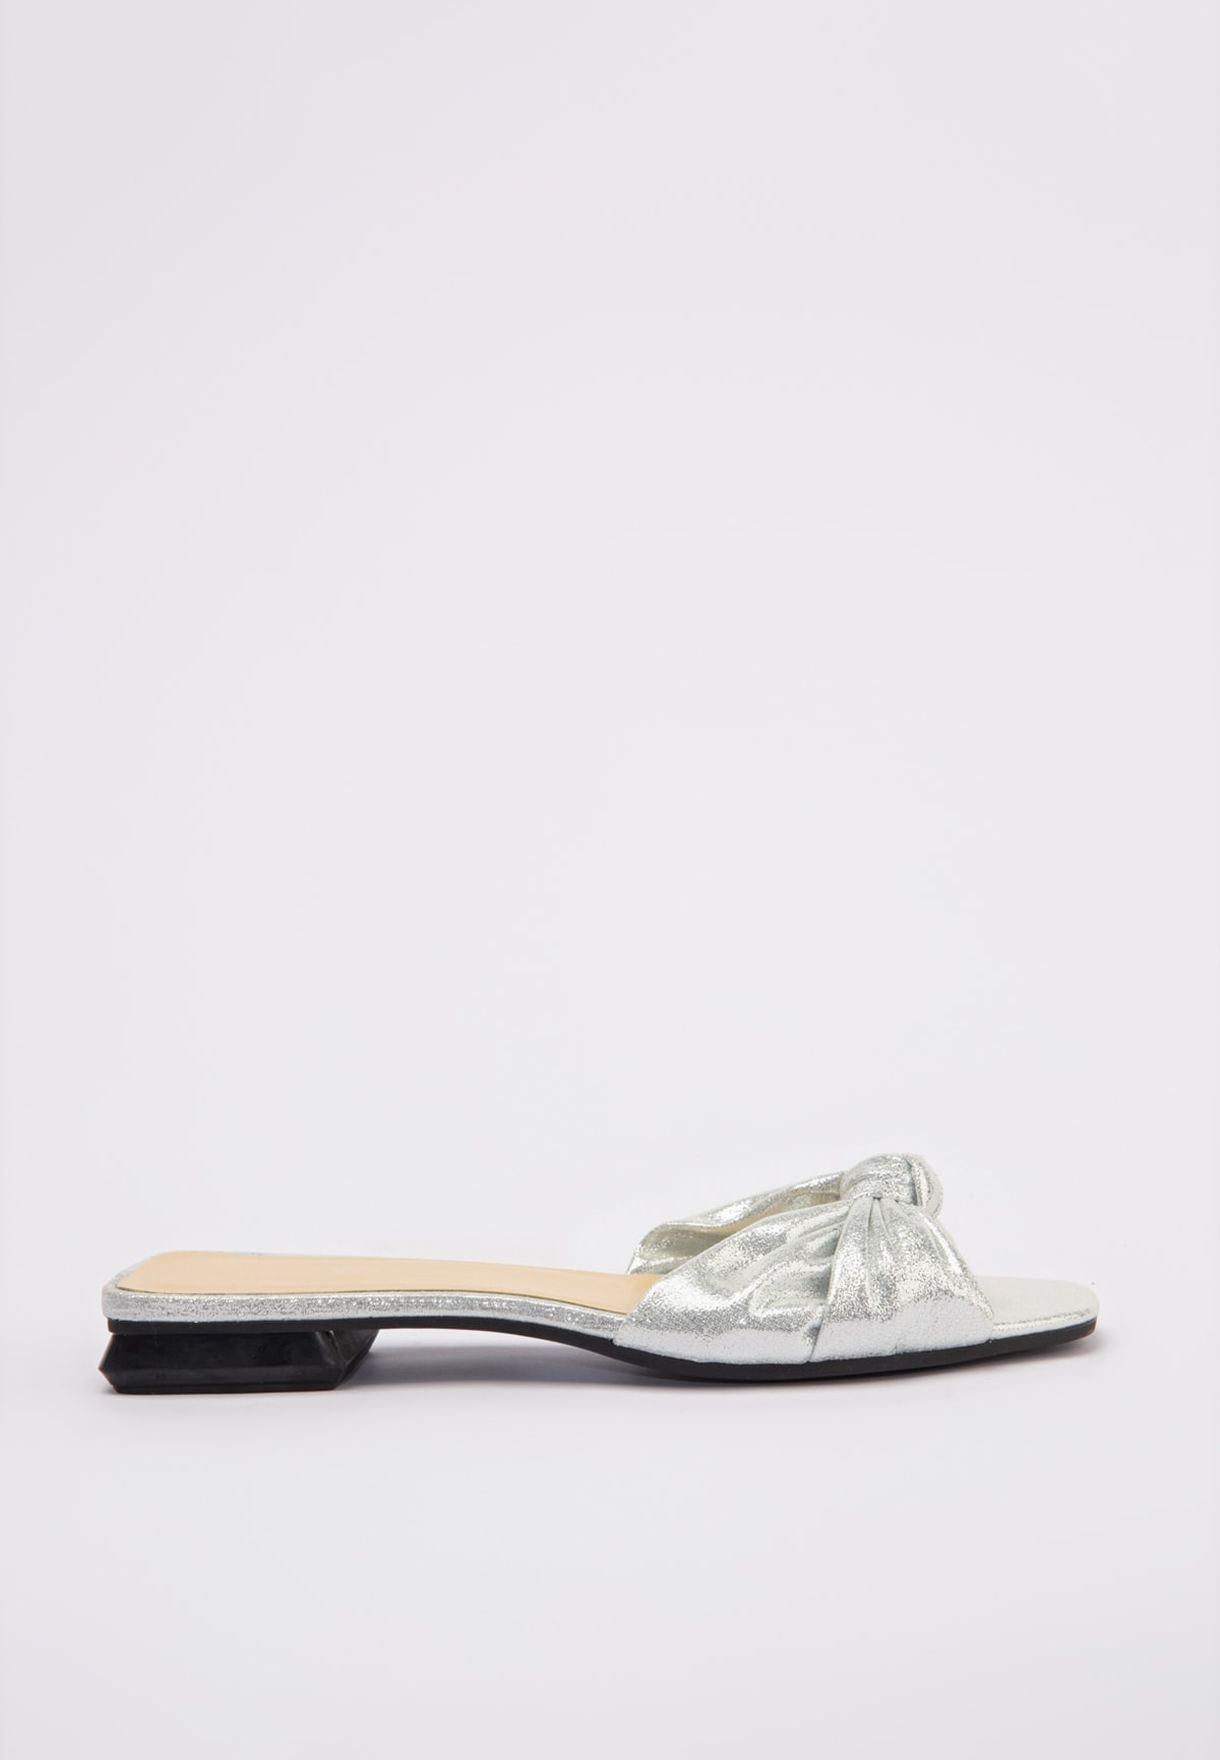 flip flops with small heel